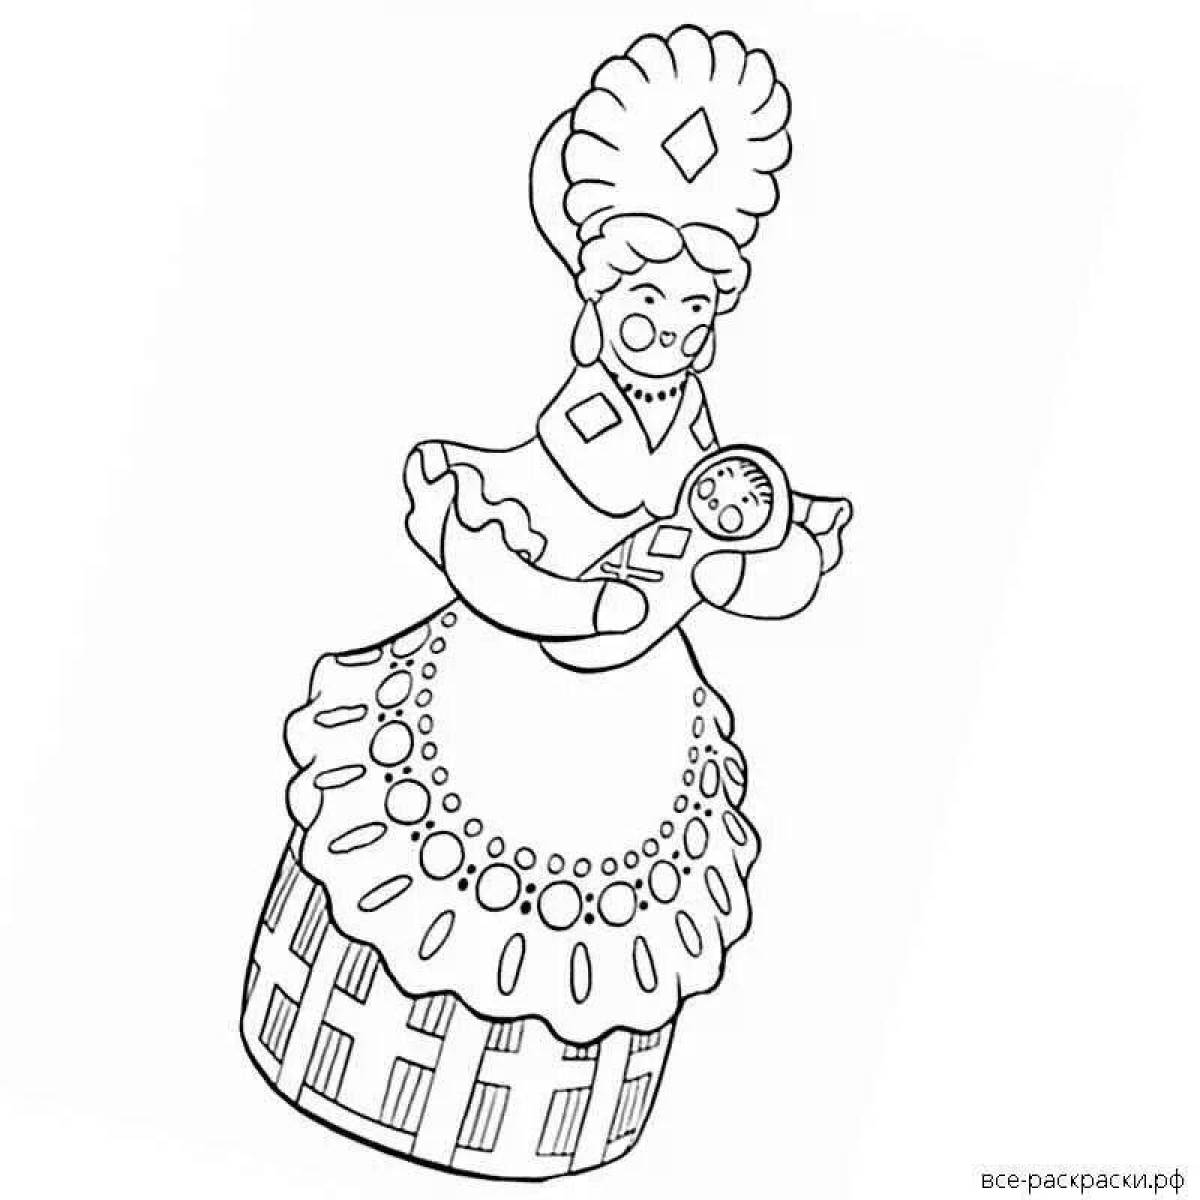 Увлекательная раскраска дымковская дама для детей